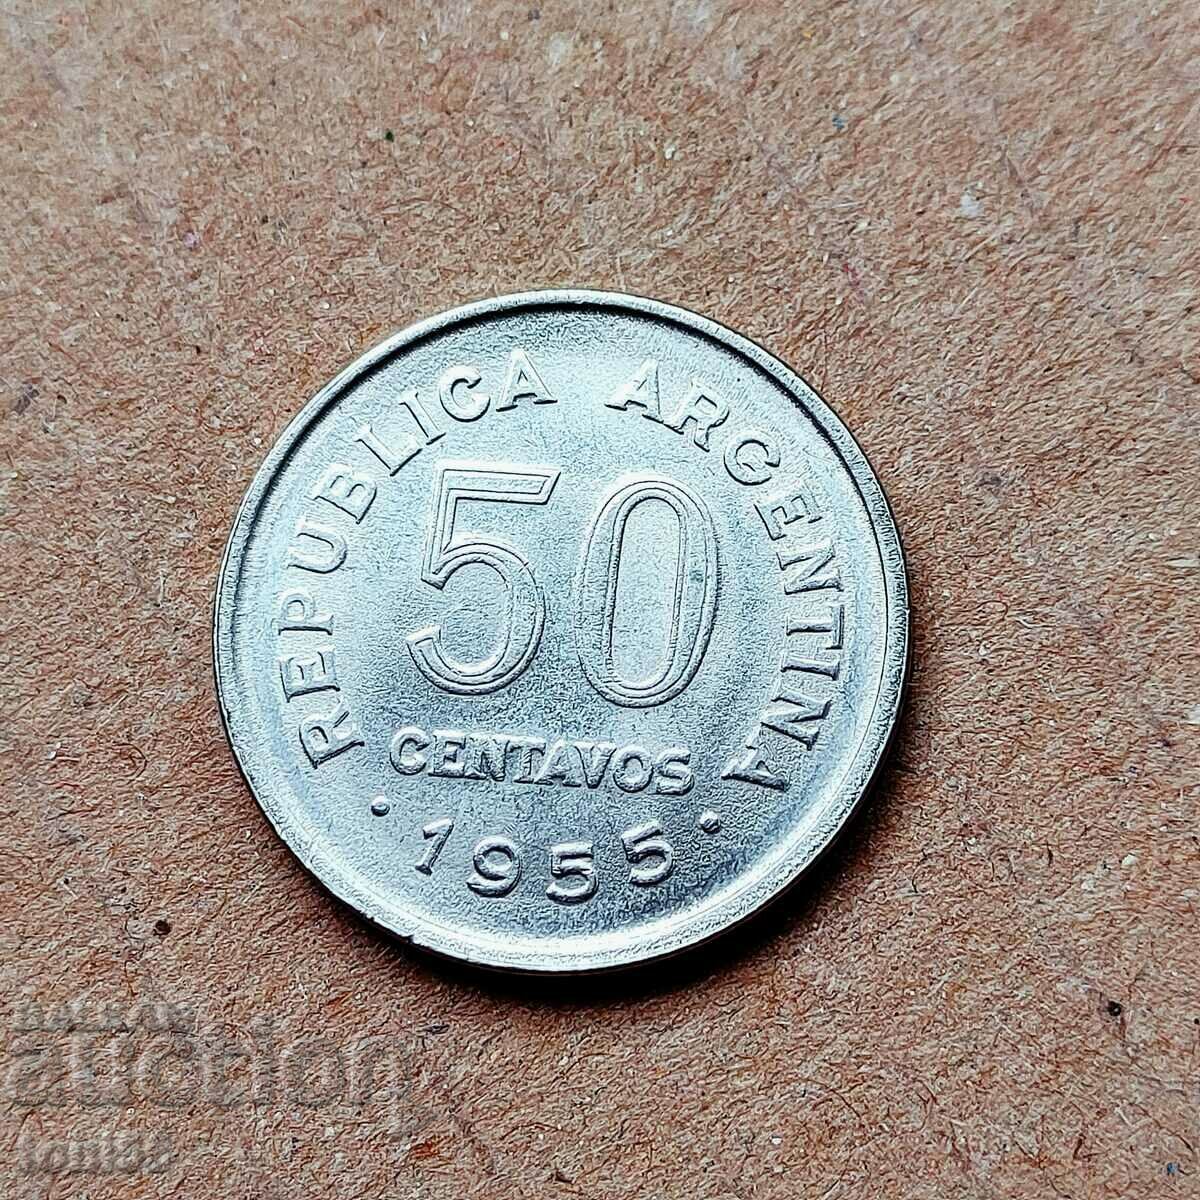 Argentina 20 centavos 1959 aUNC